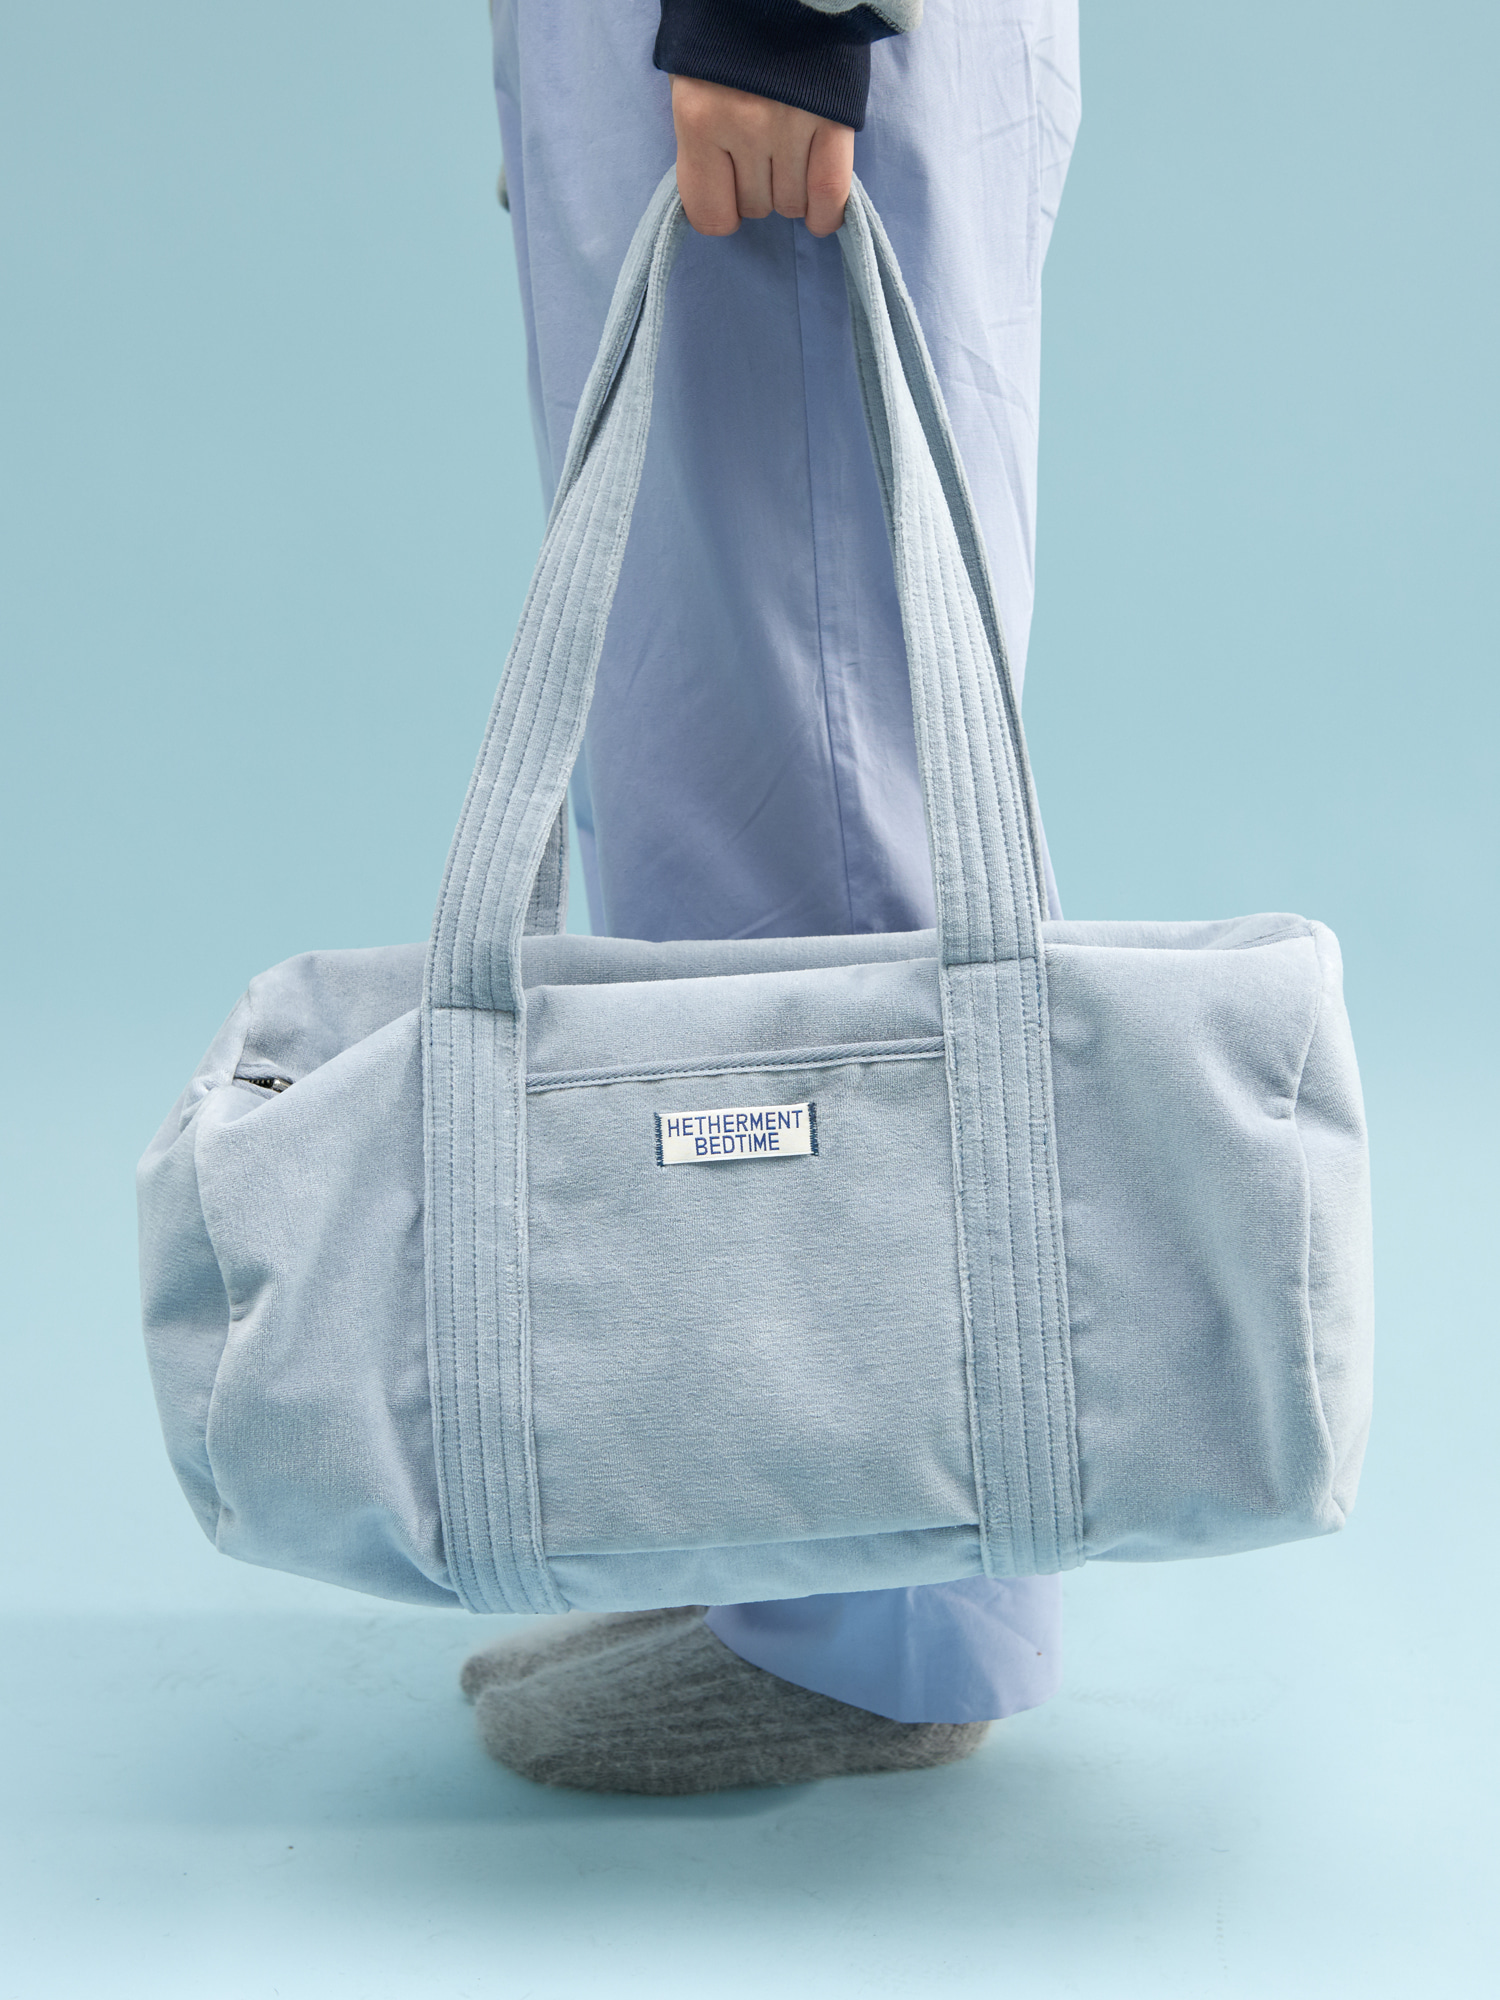 BEDTIME velour duffle bag (sky blue)